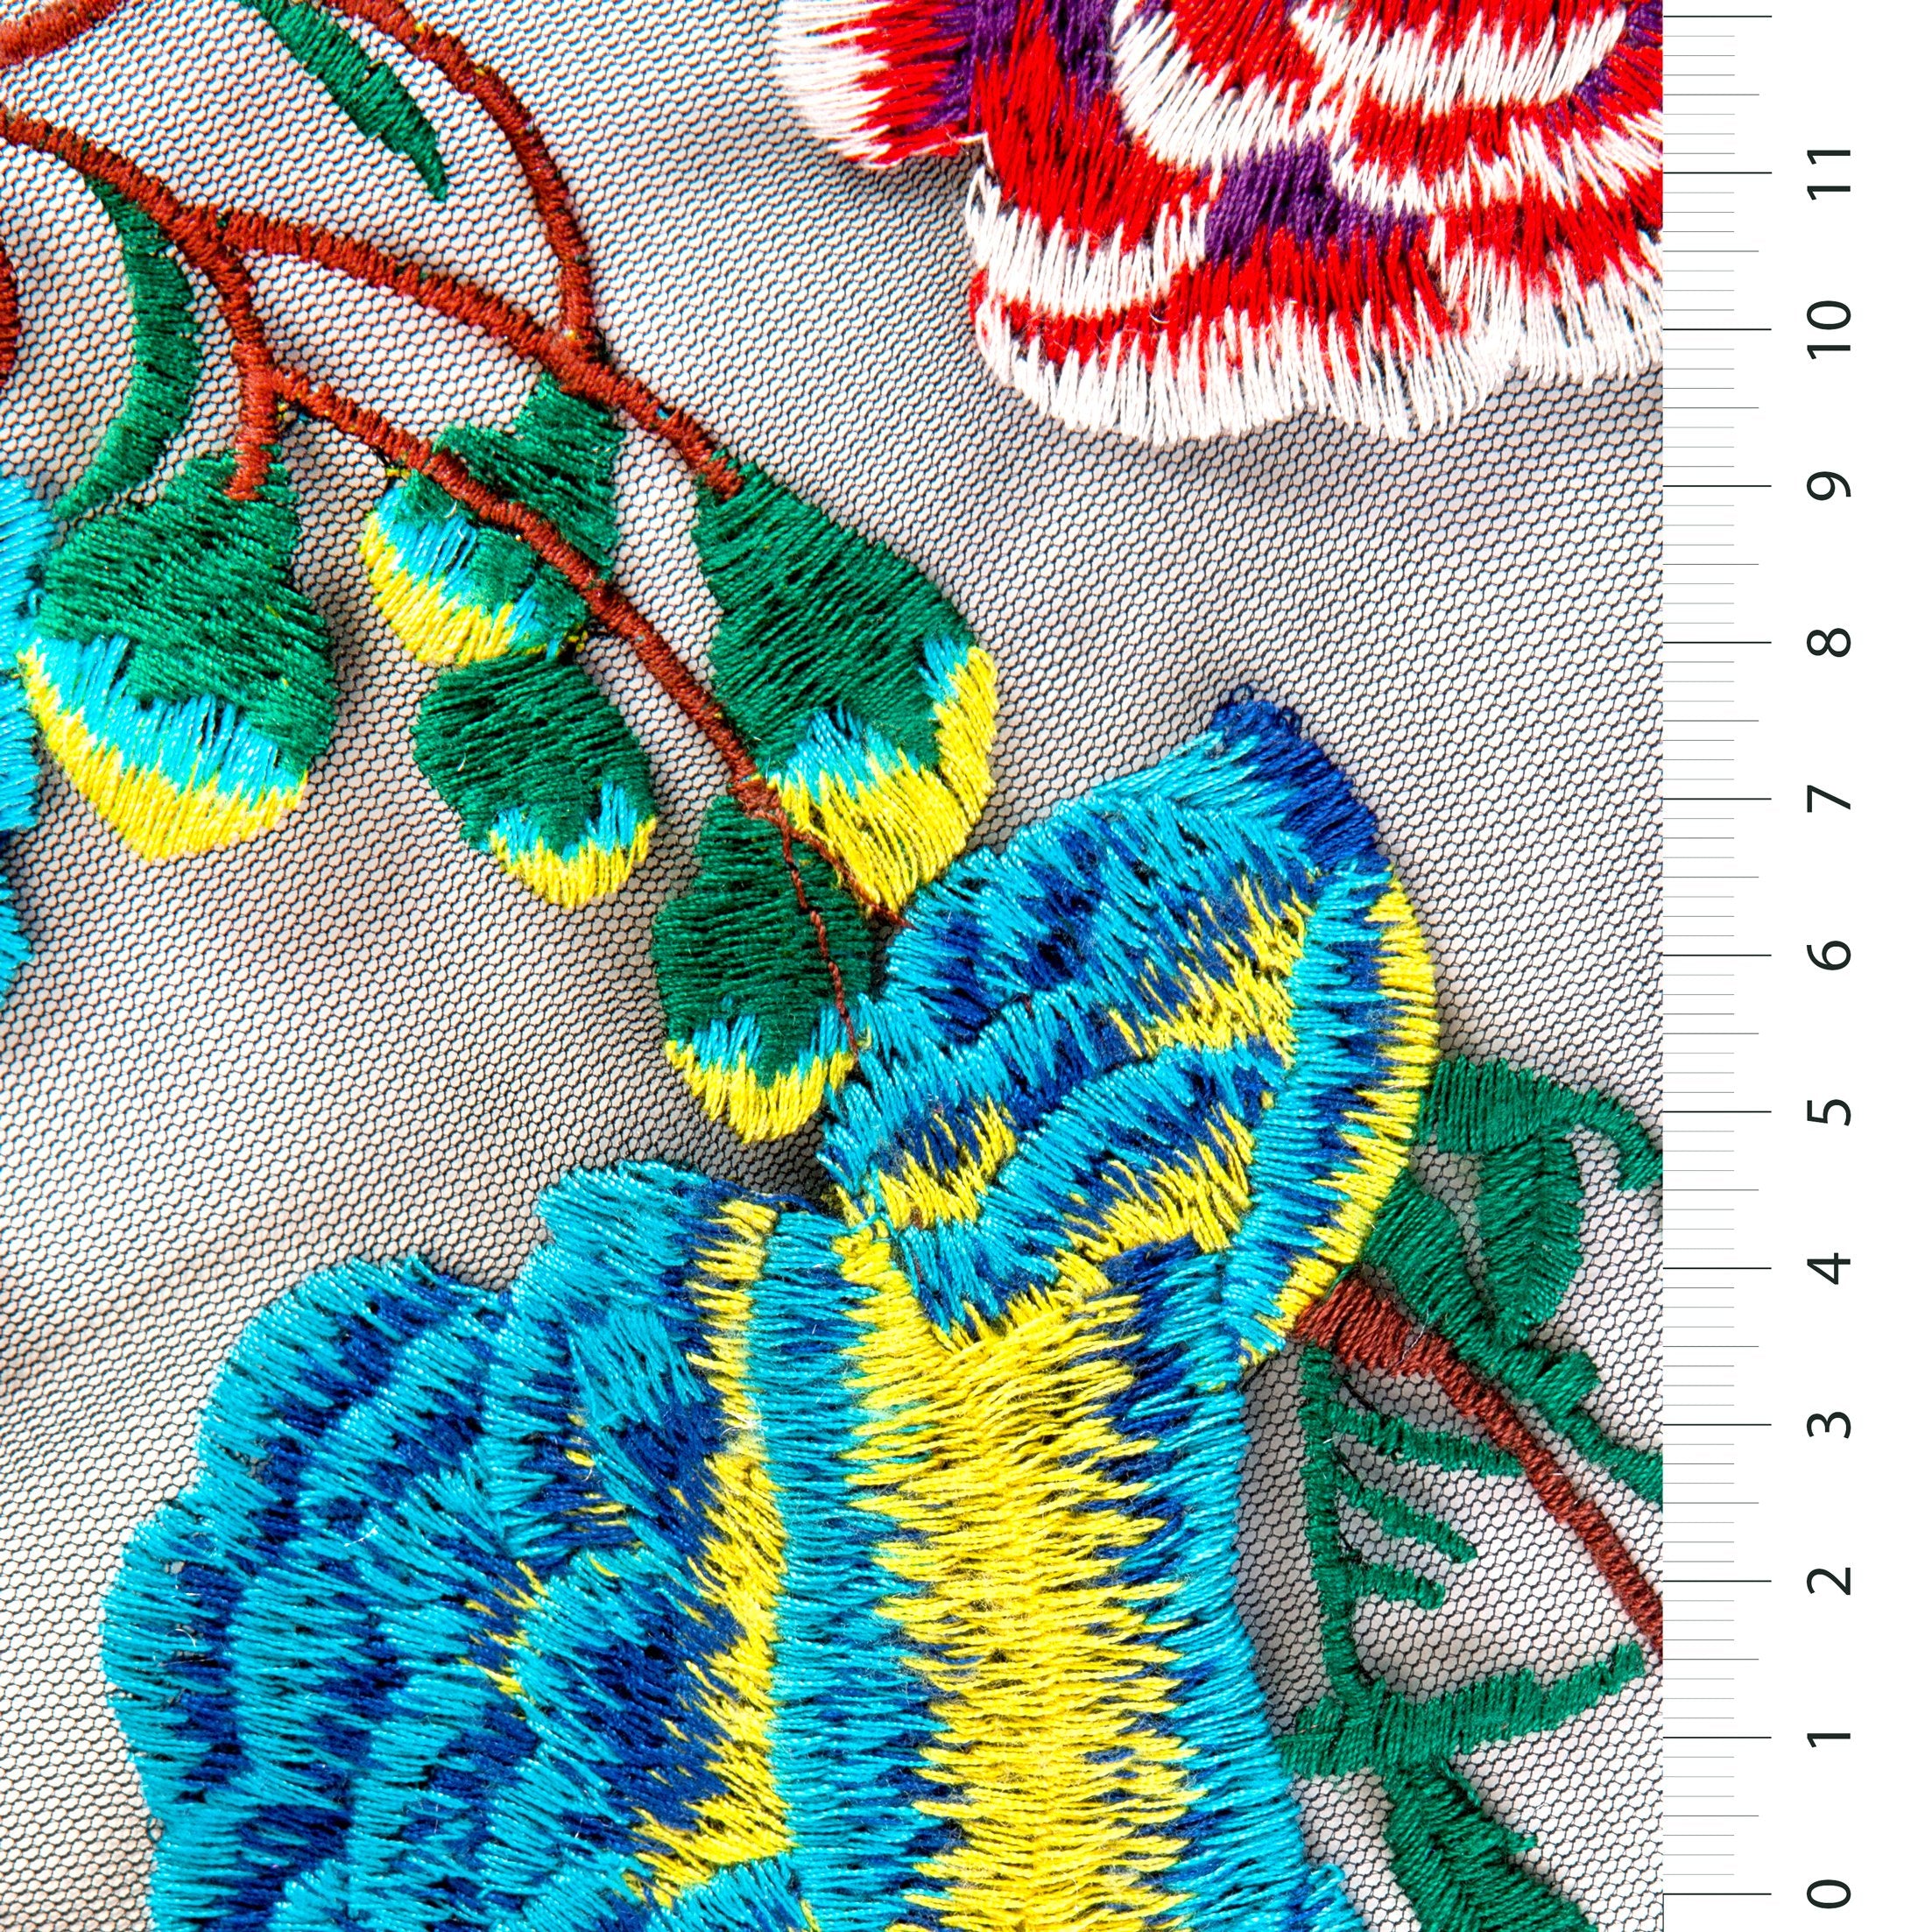 Karanfil Tasarımı Çiçek İpliği Nakışlı Örgü Kumaş | Burç Kumaş